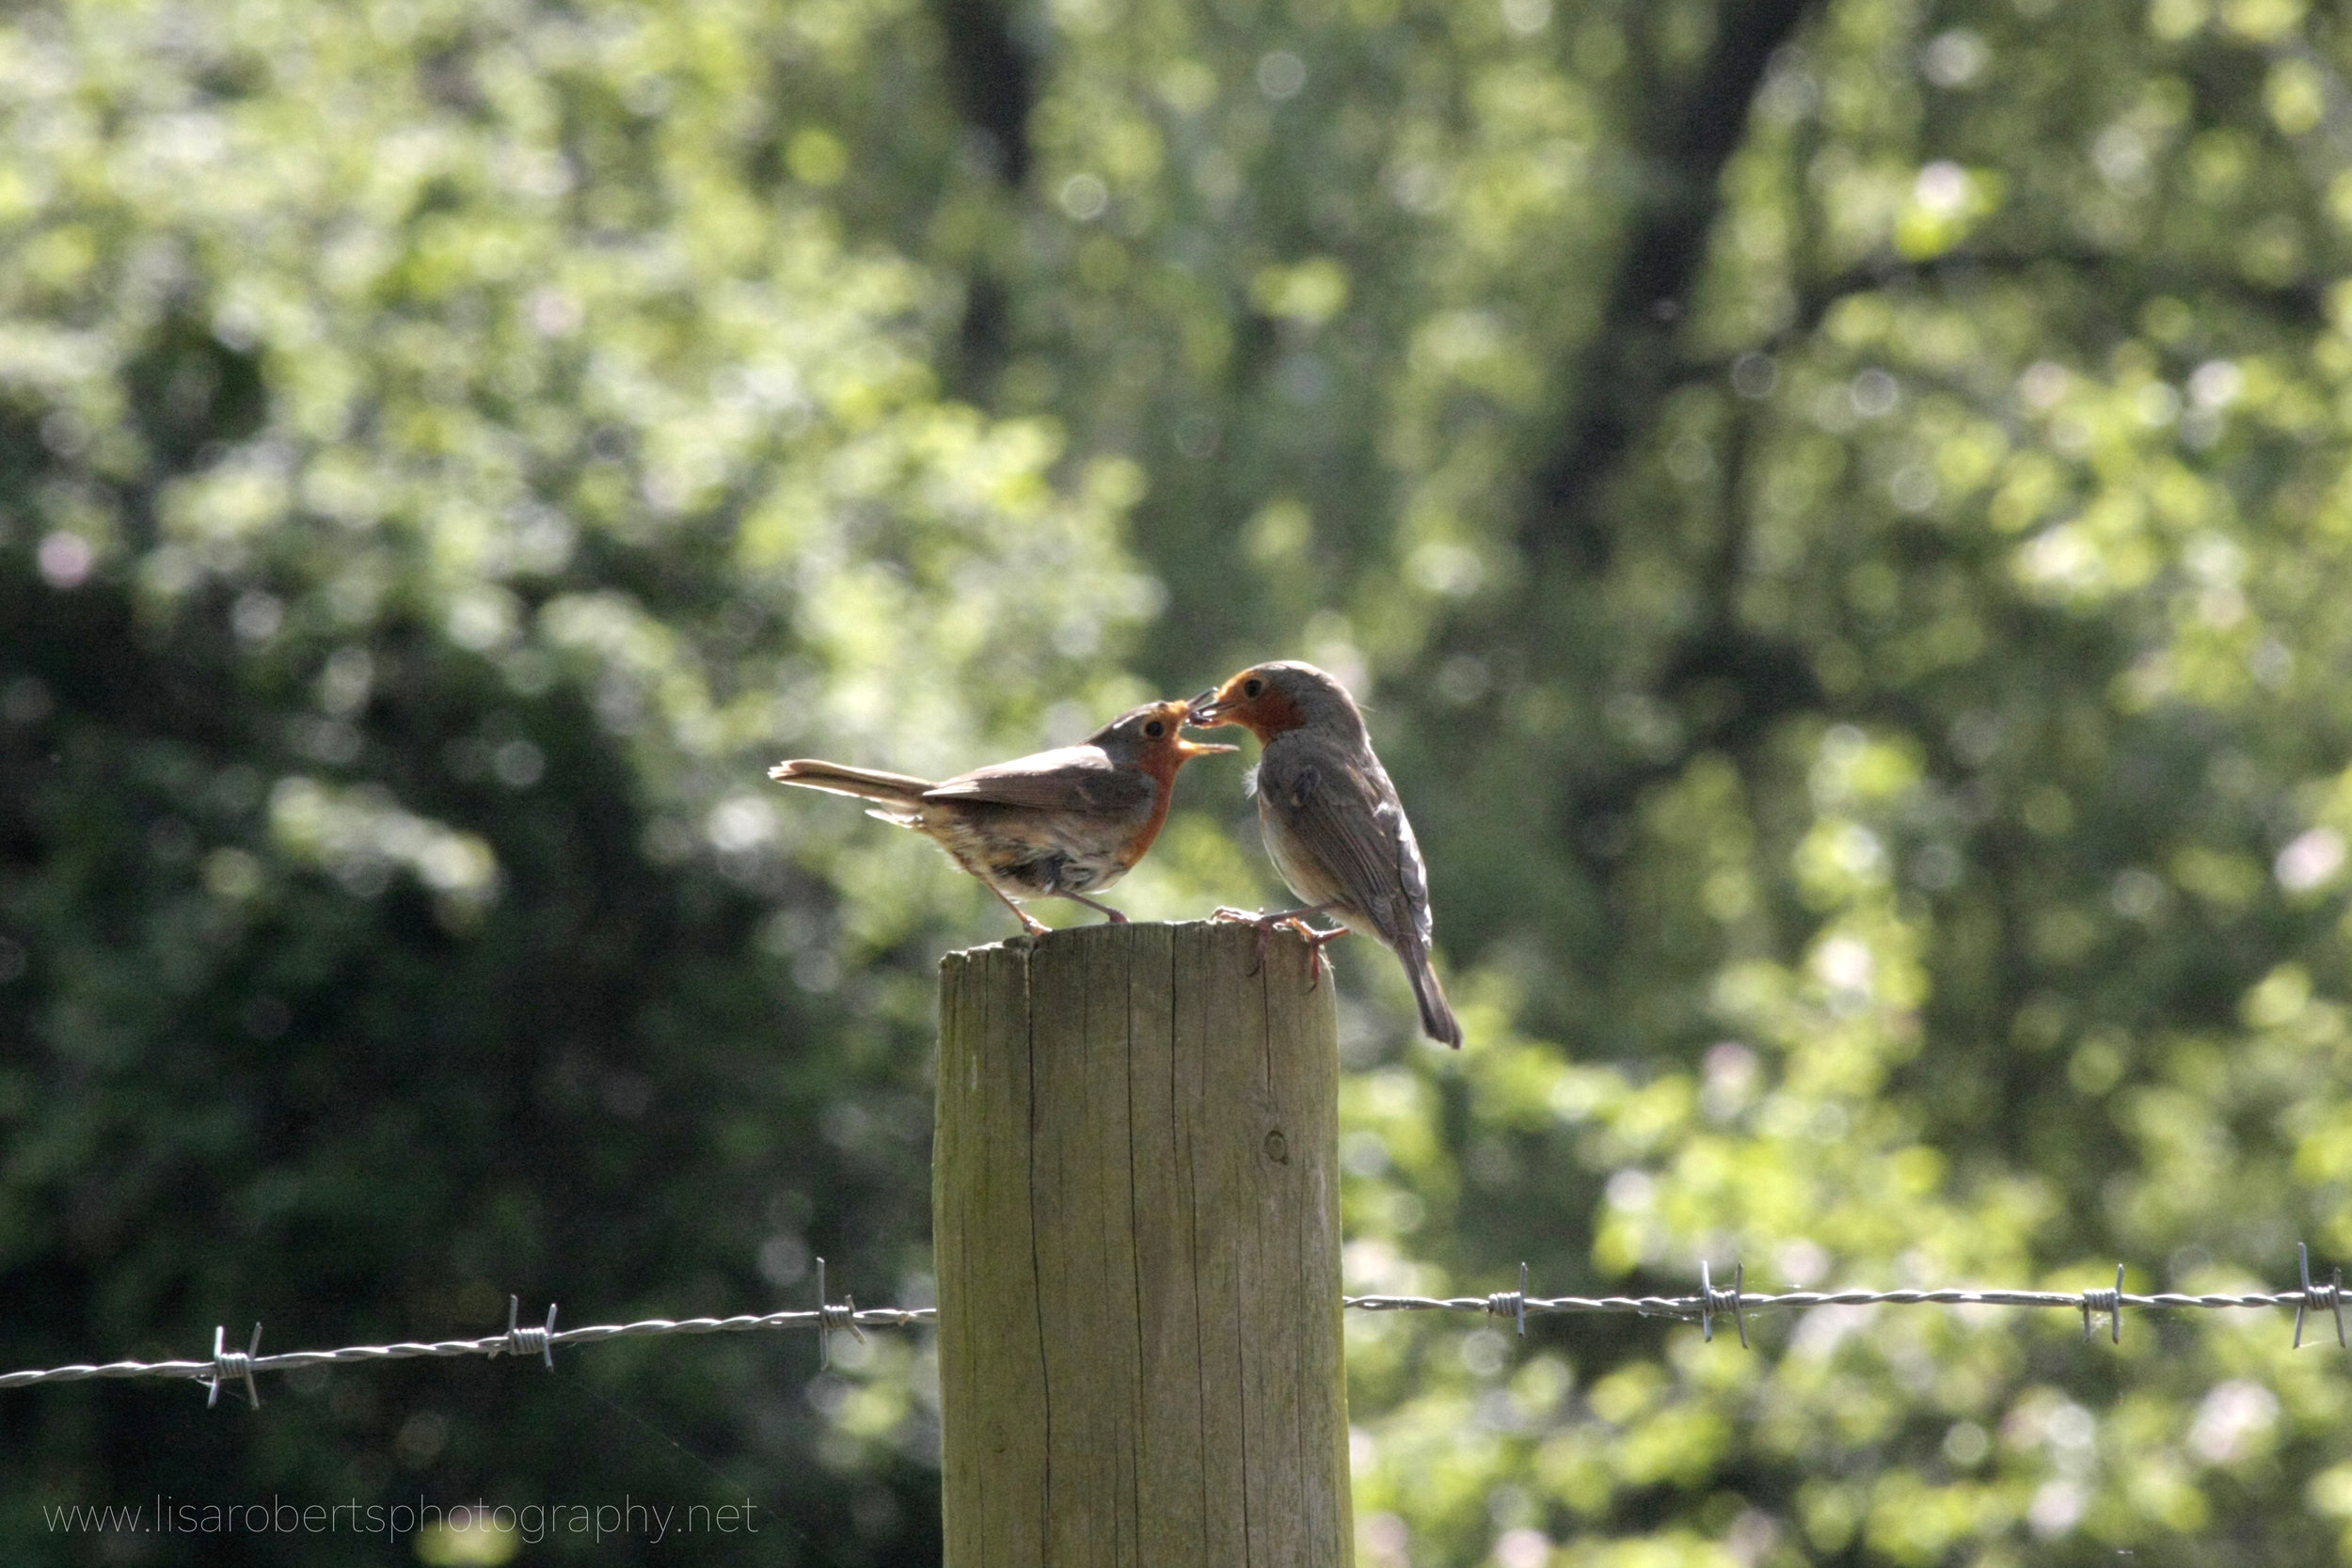  Robin feeding young 